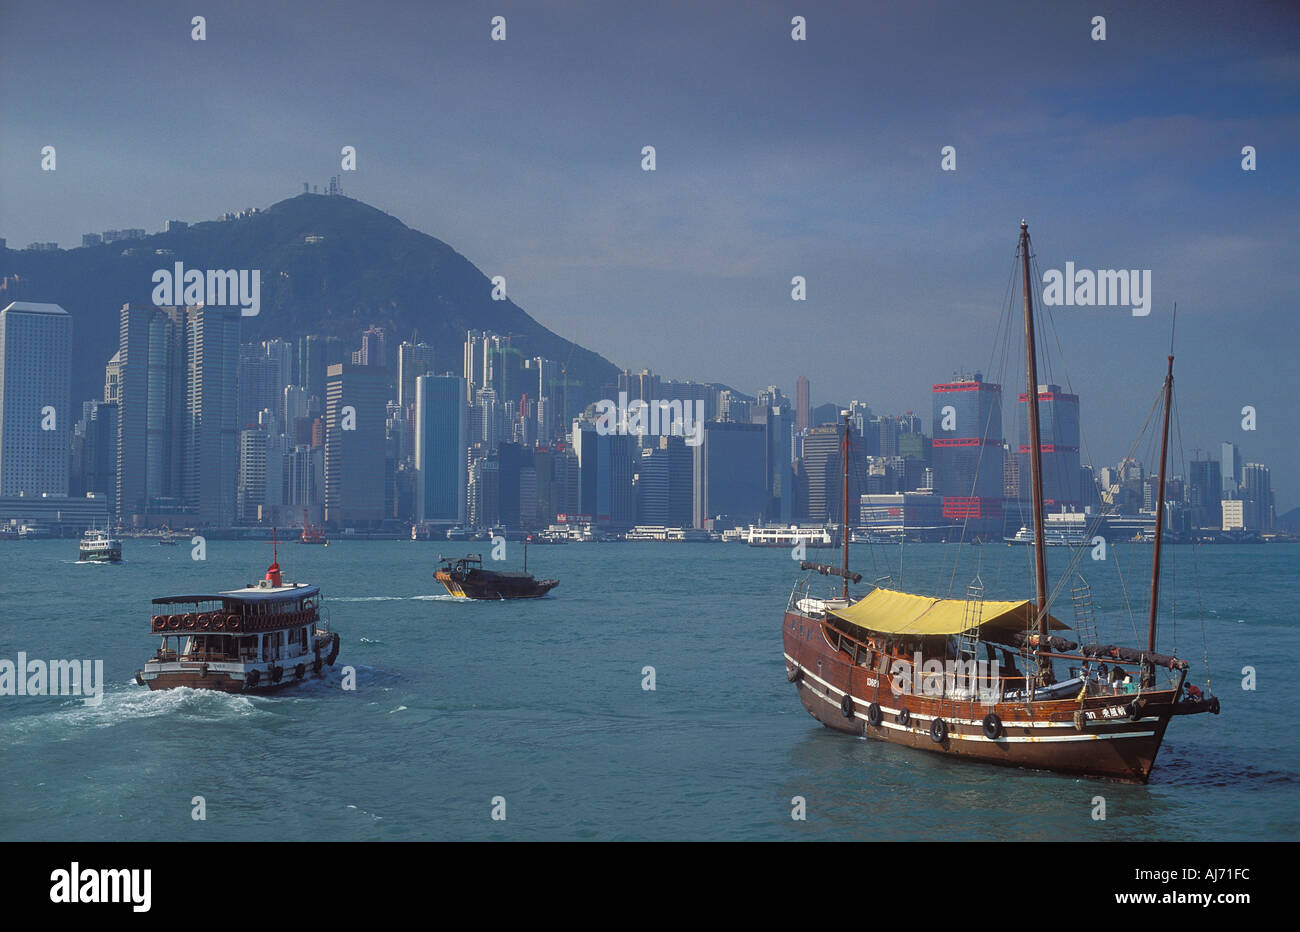 Hong Kong skyline with Sampan from Kowloon Hong Kong China Stock Photo